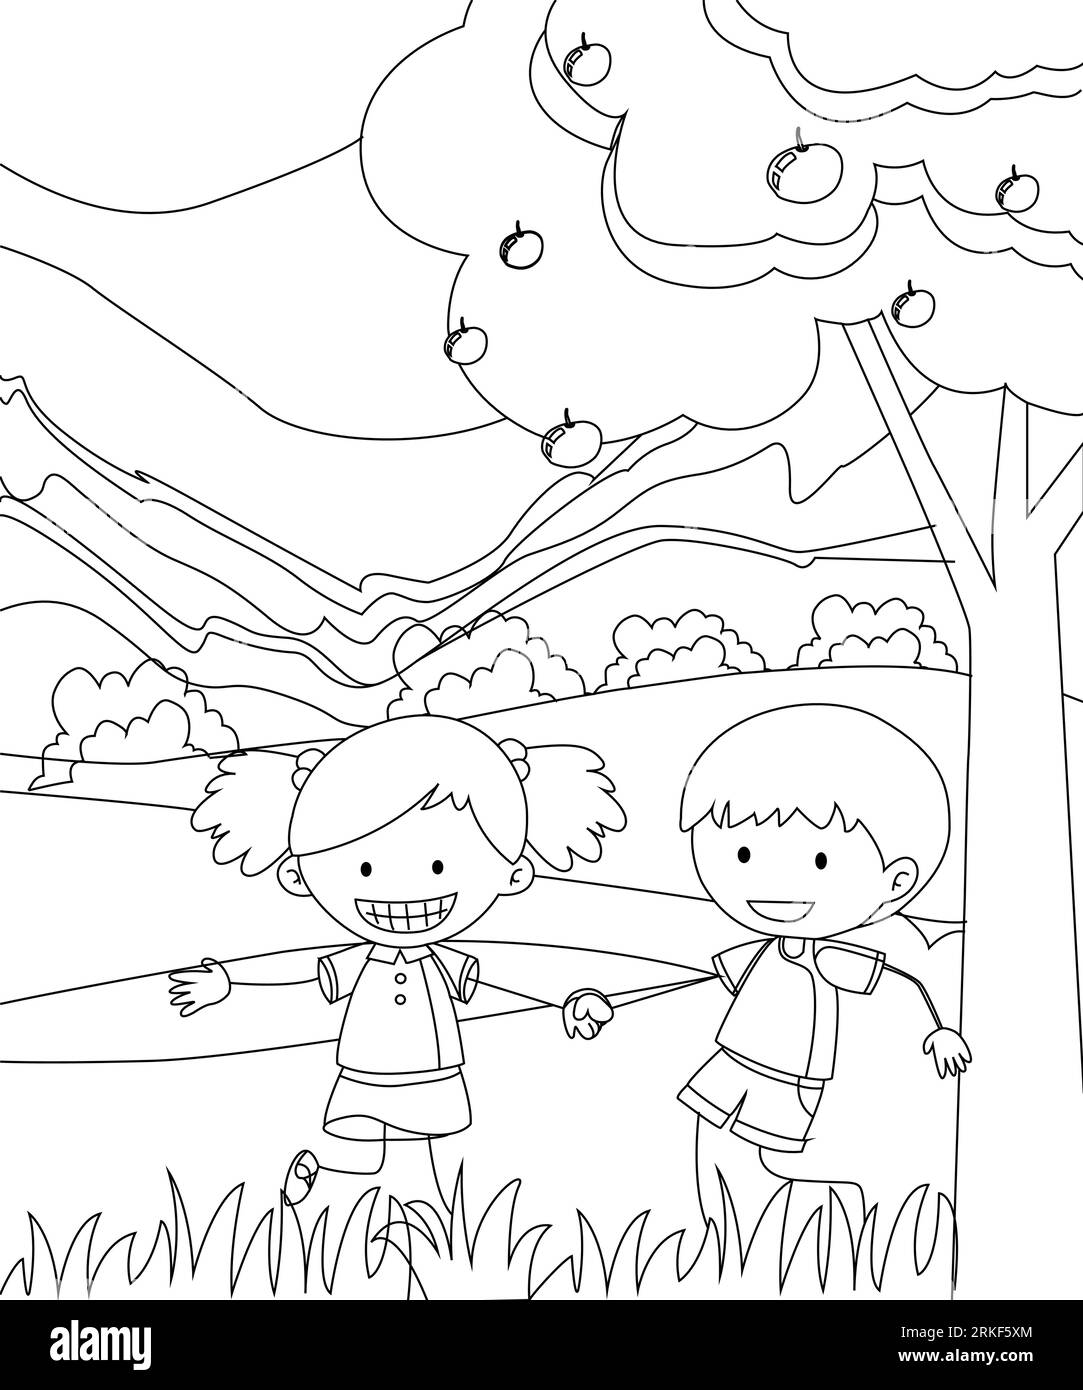 Bambini che giocano nella Garden Coloring Book Page. Pagina vettoriale di colorazione in bianco e nero. Illustrazione Vettoriale